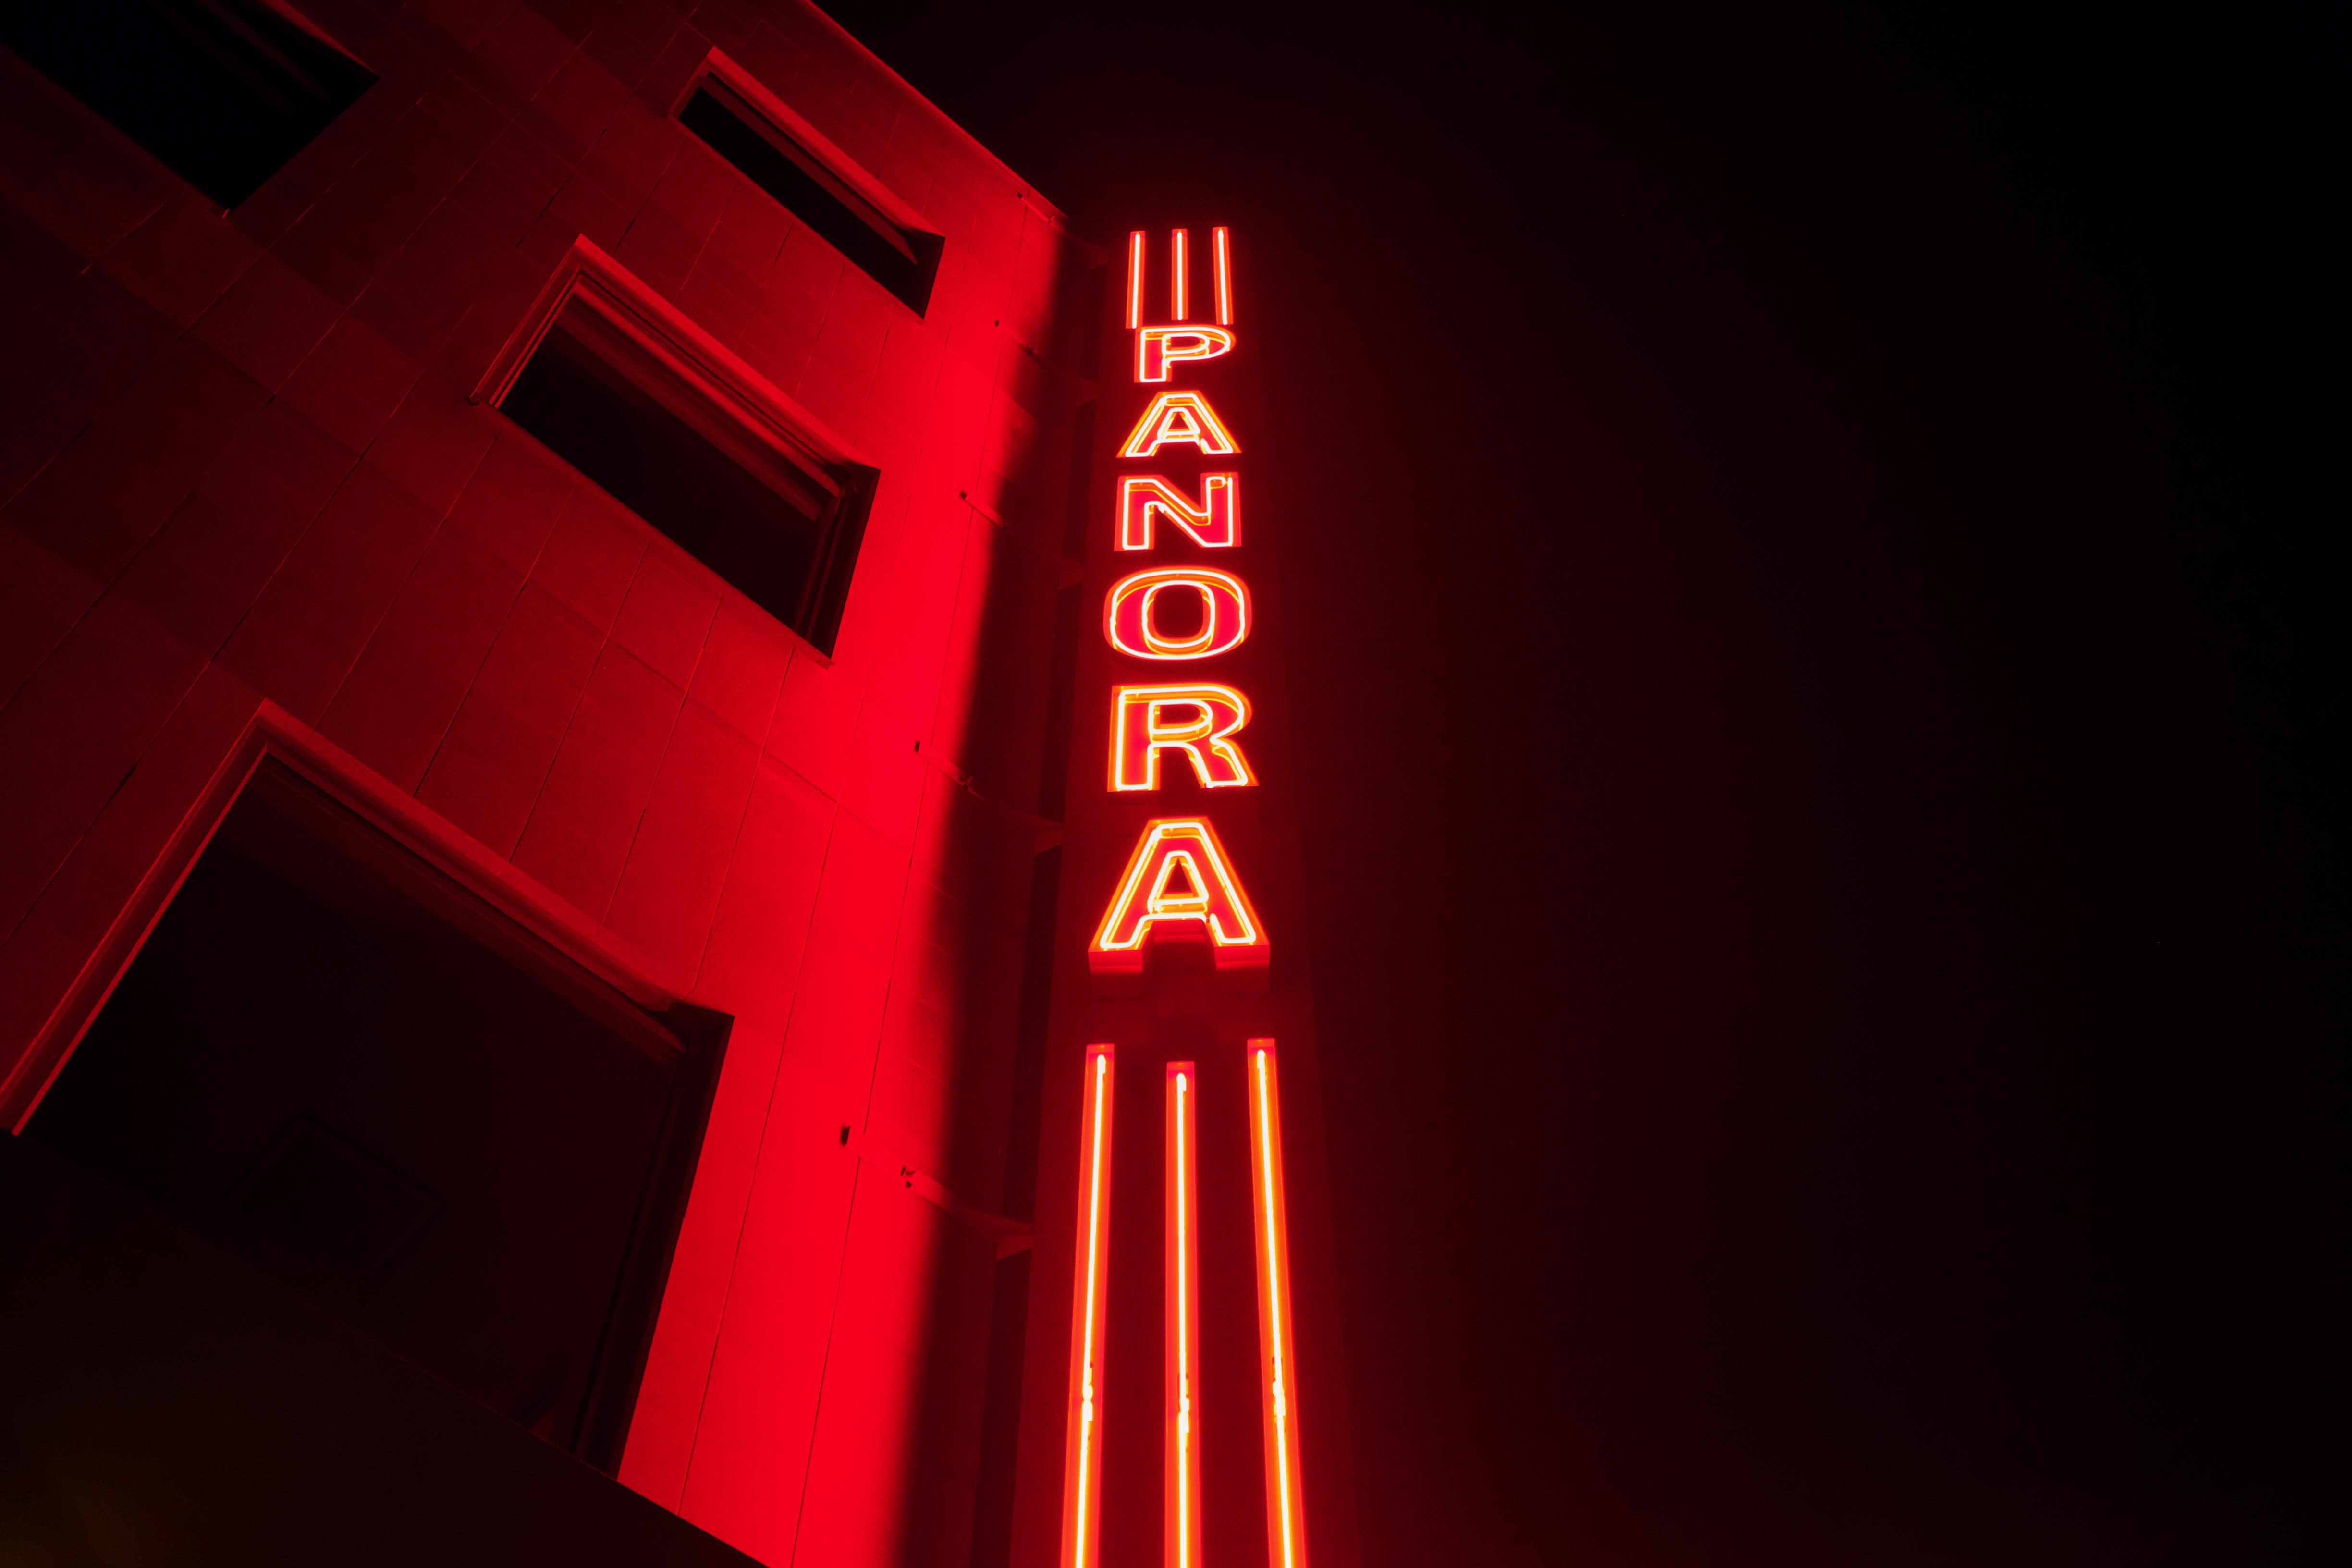 Panora red neon